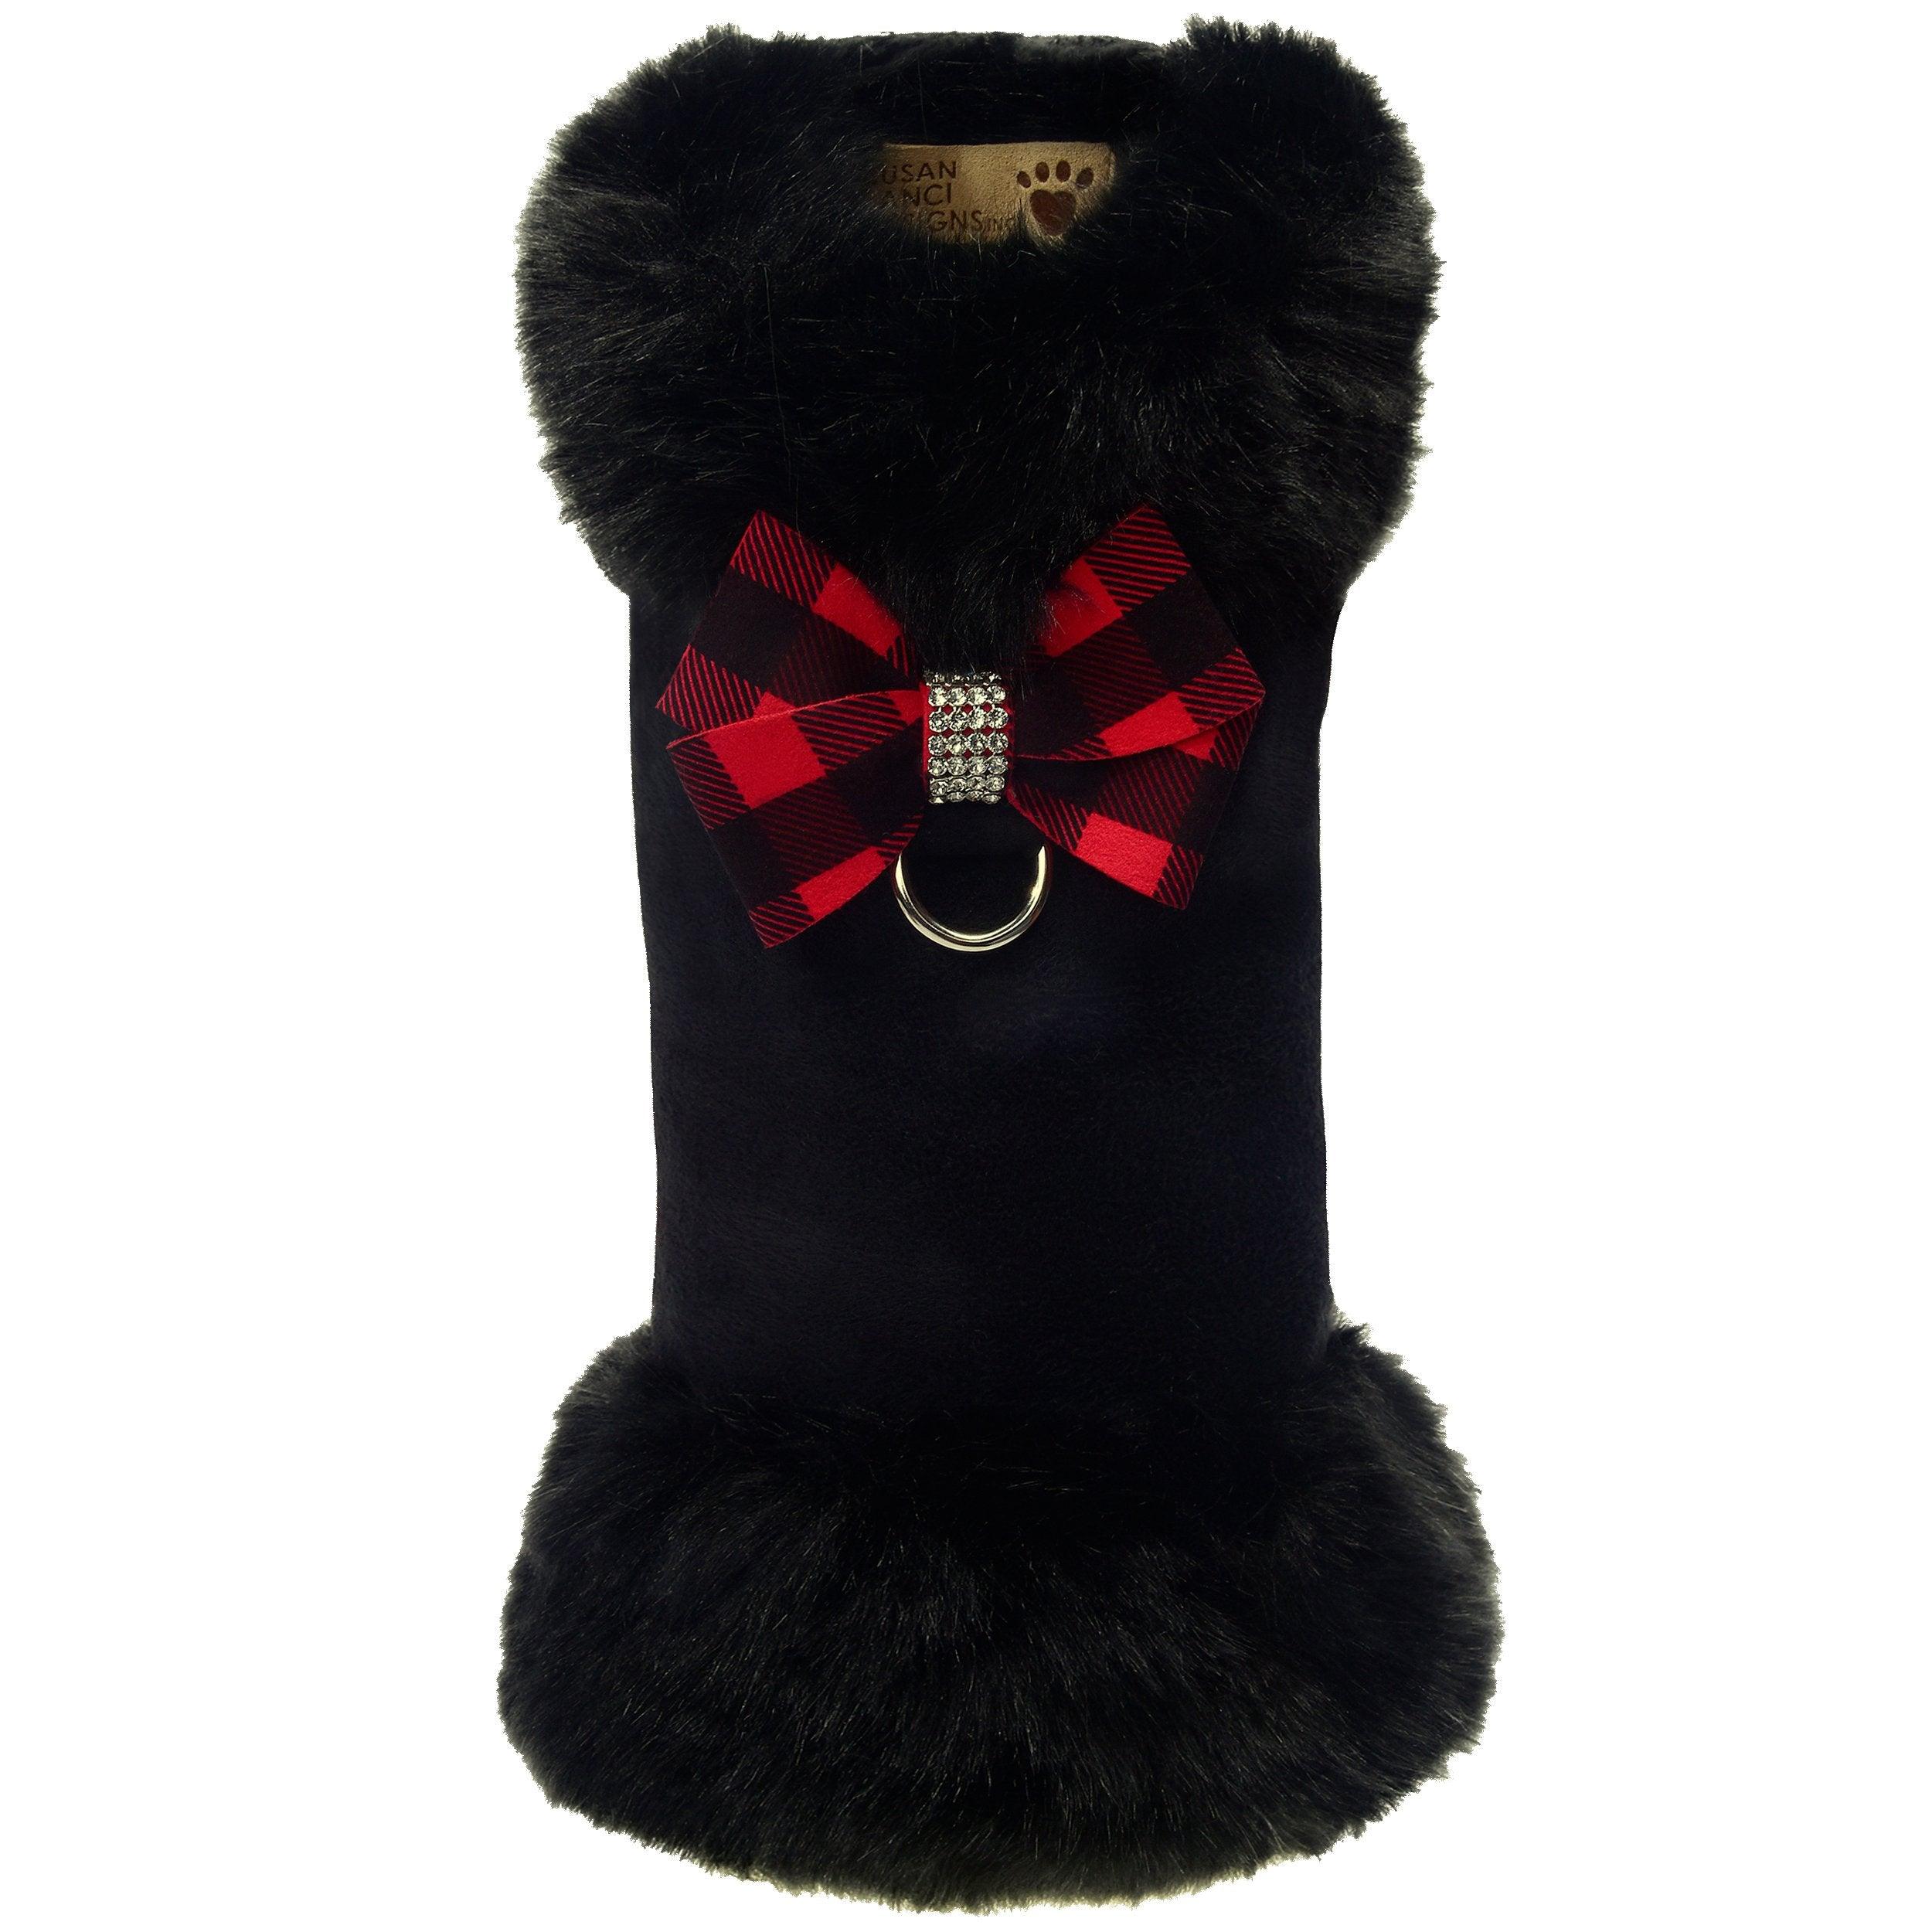 Red Gingham Nouveau Bow Black Fox Fur Coat - Rocky & Maggie's Pet Boutique and Salon